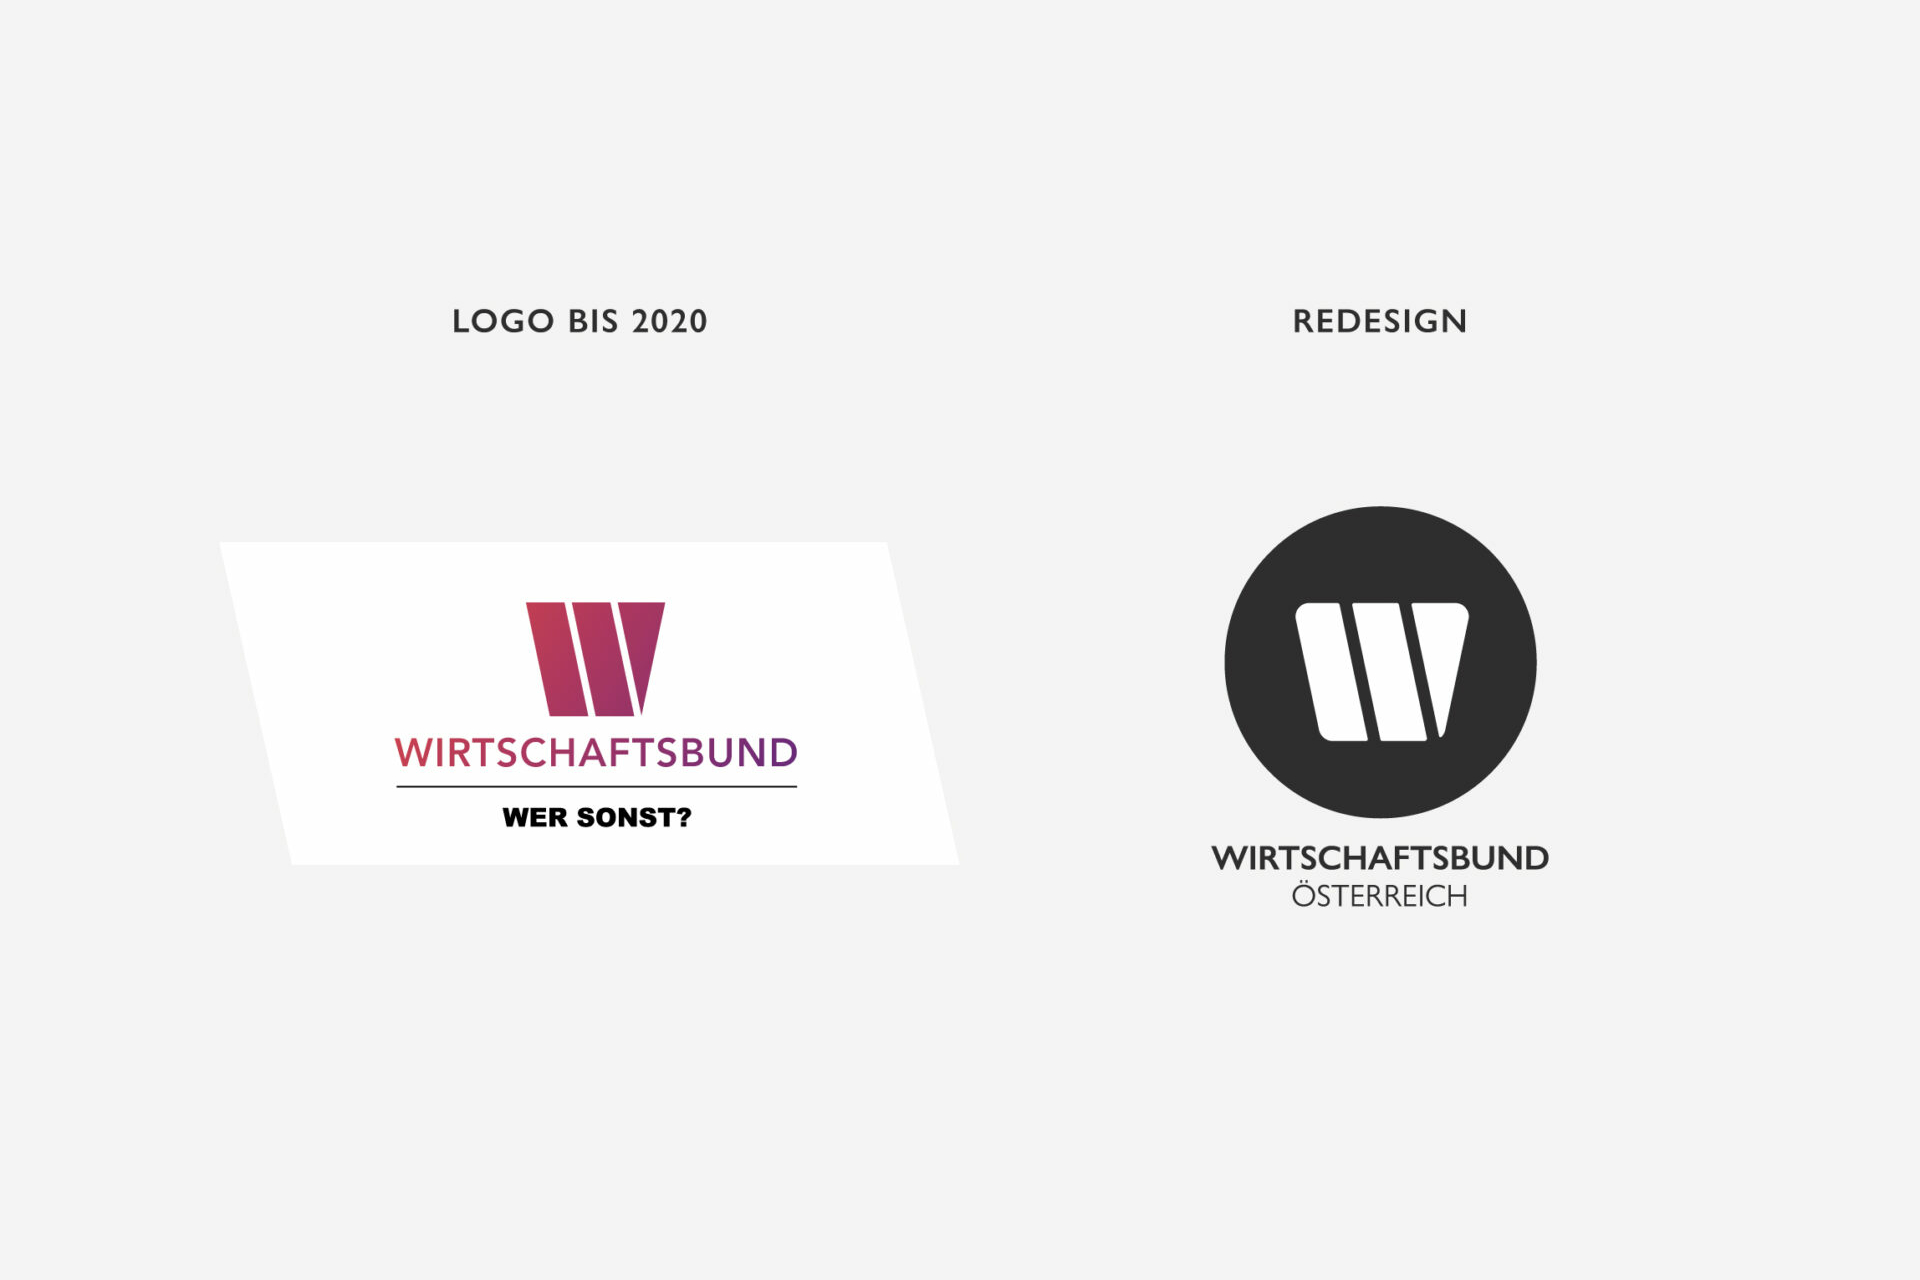 Gegenüberstellung des Wirtschaftsbund-Logo in der Variante bis 2020 sowie im neuen Design.